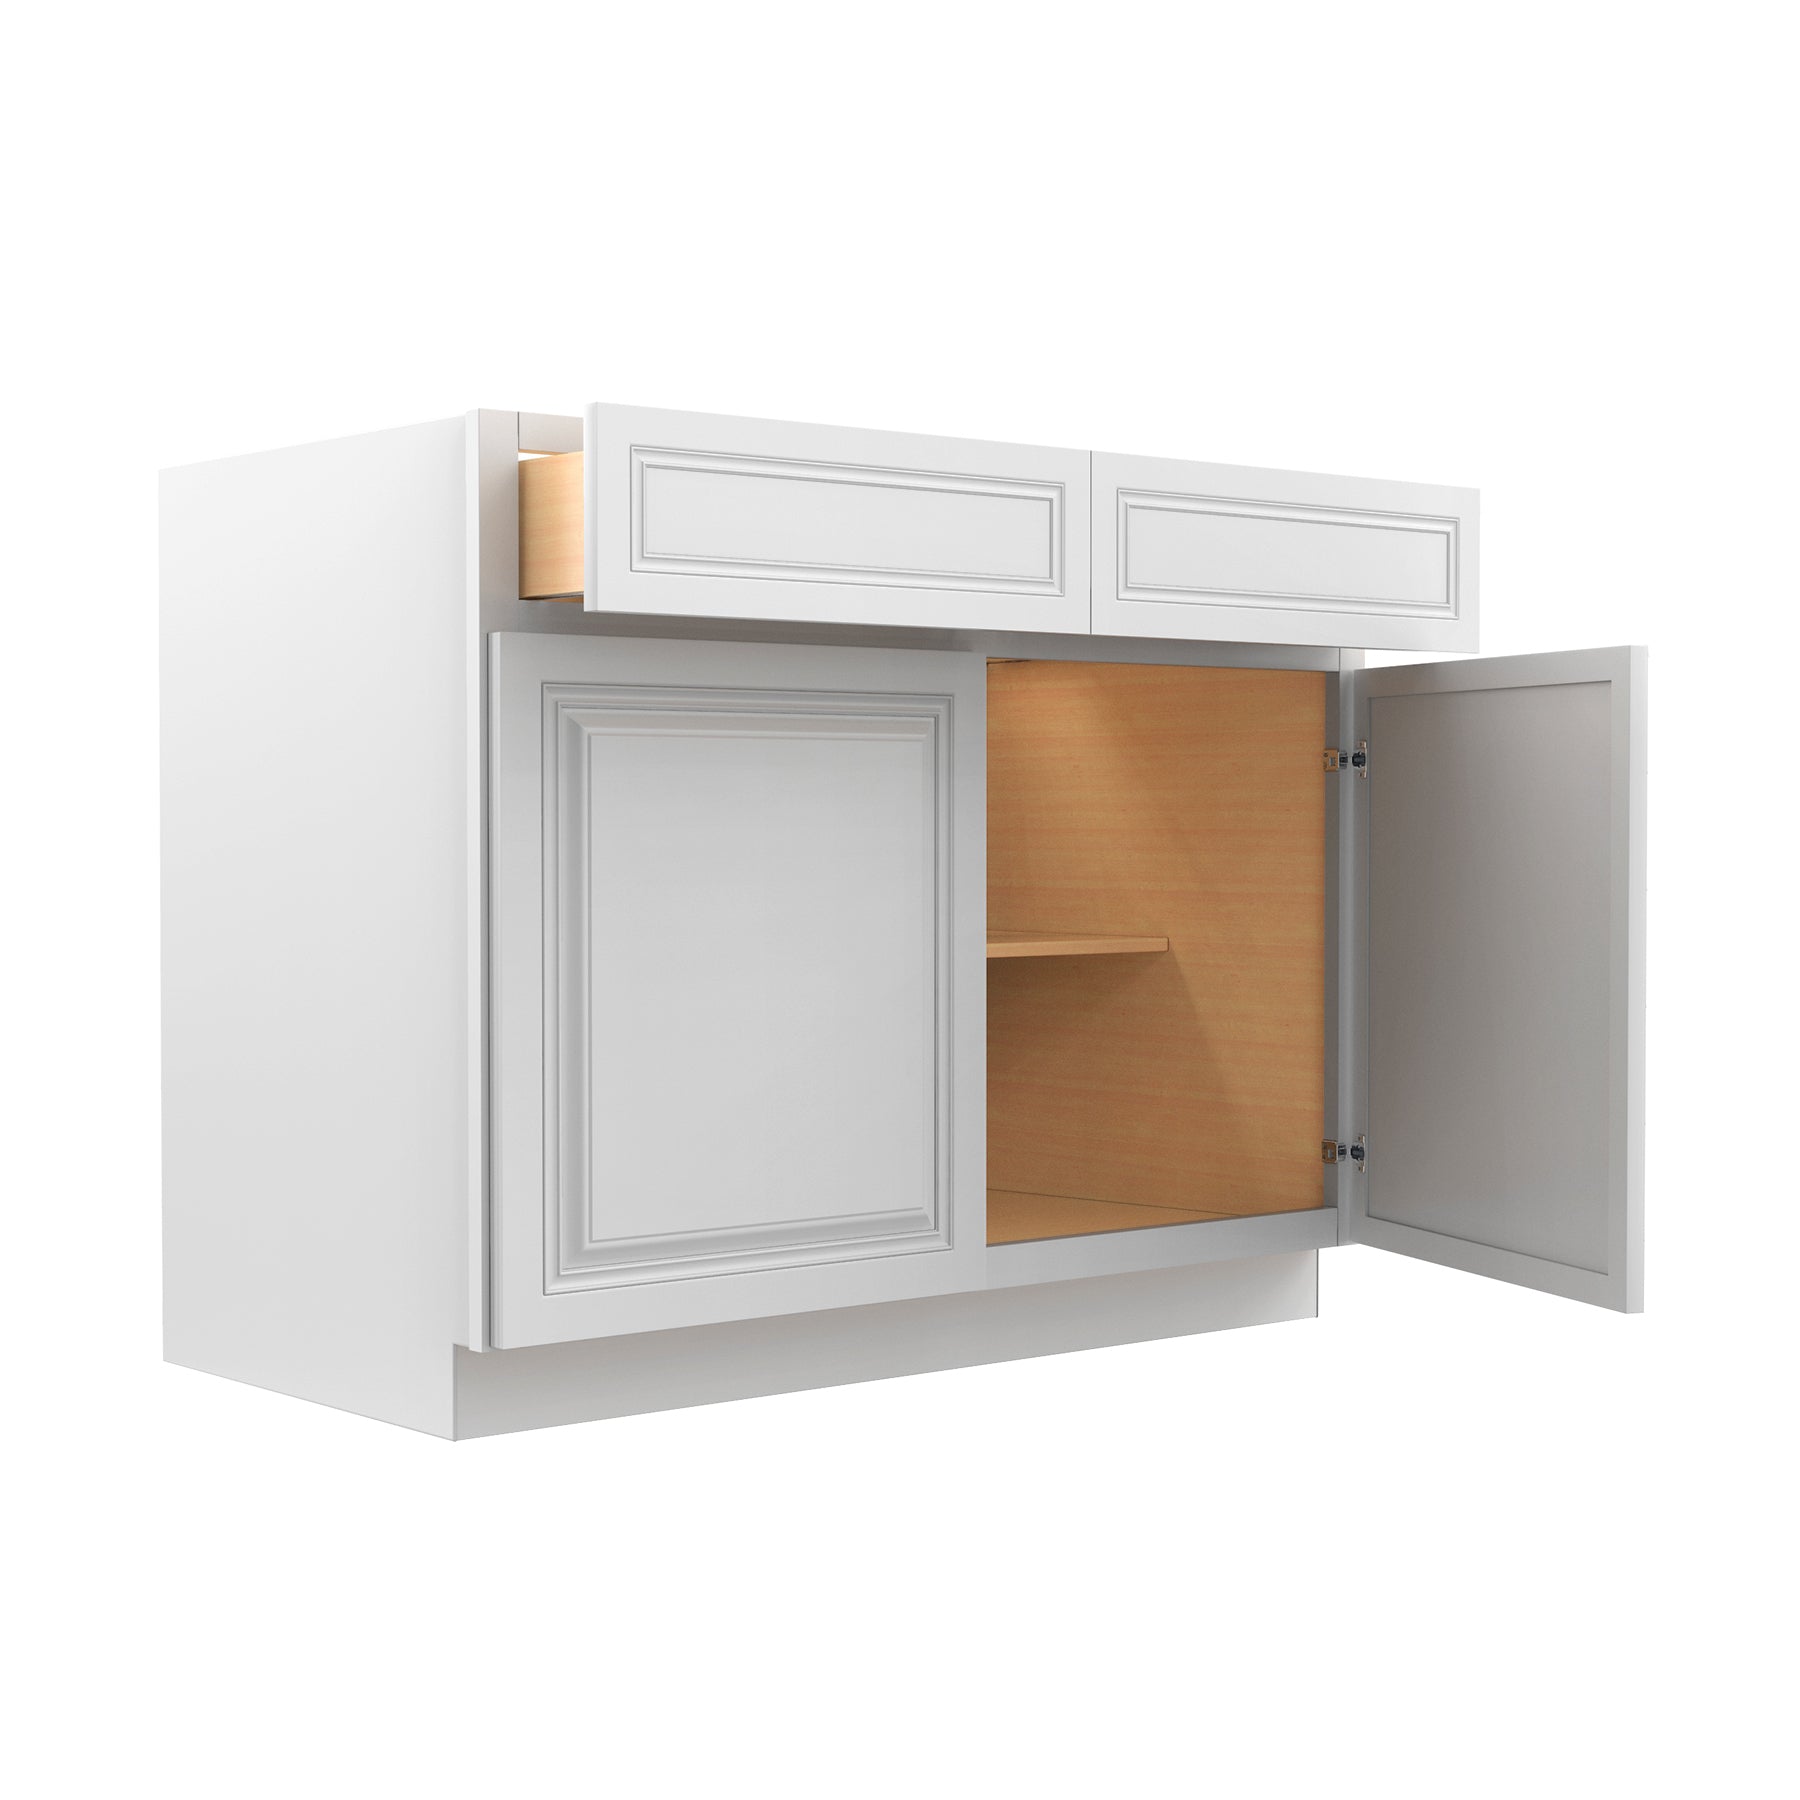 Park Avenue White - Double Door Base Cabinet | 42"W x 34.5"H x 24"D